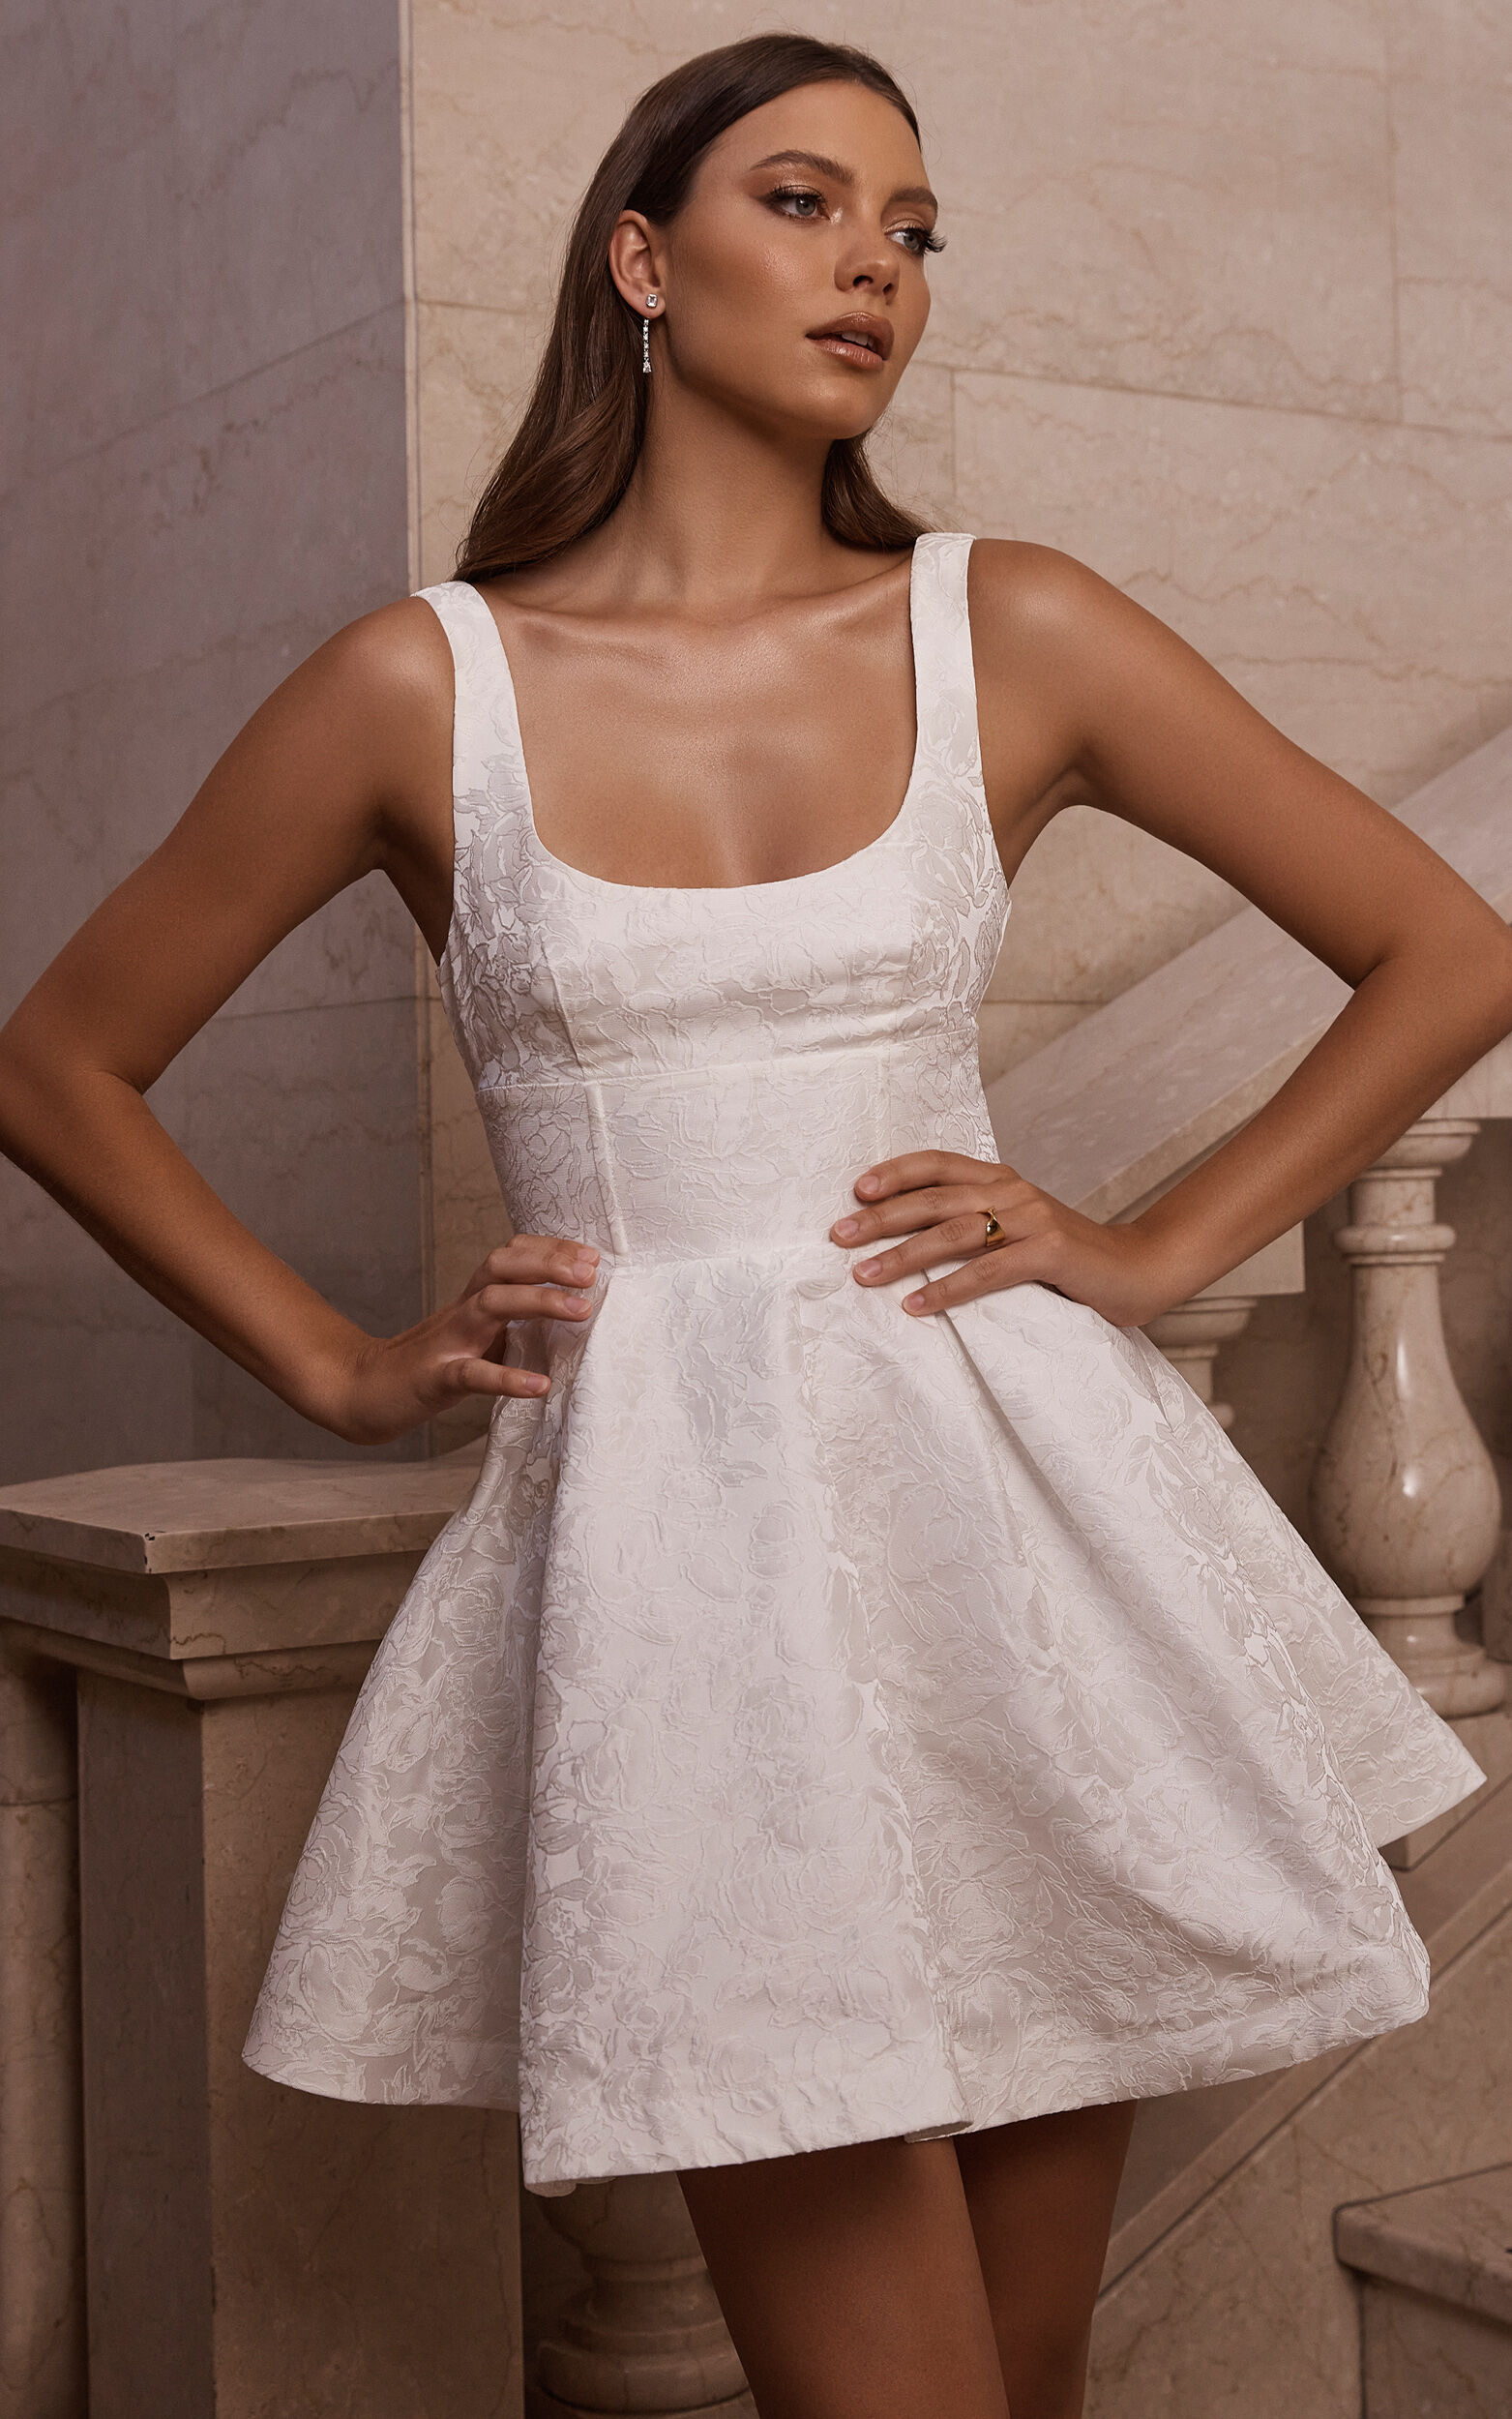 Summer Desires Corset Mini Dress  Corset mini dress, Mini dress, White  lace corset